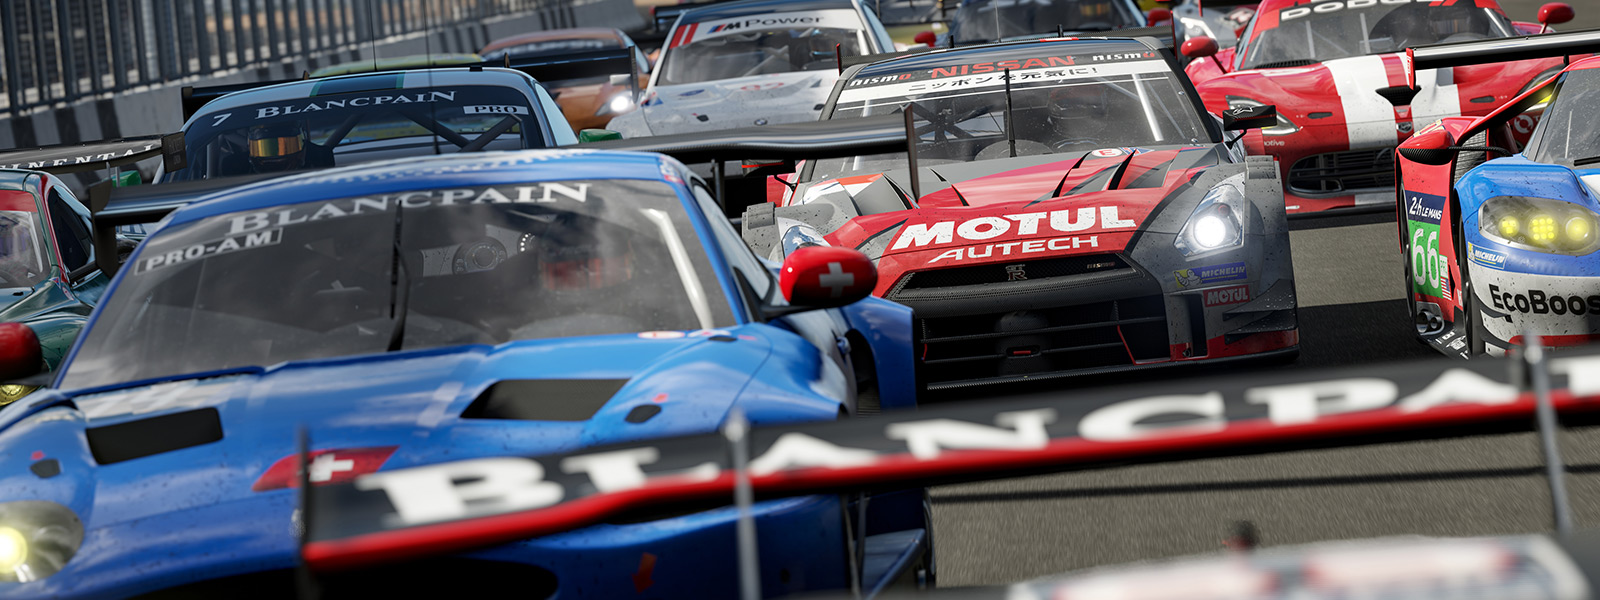 Vista frontal da linha de partida de uma corrida do Forza no jogo Forza Motorsport 7